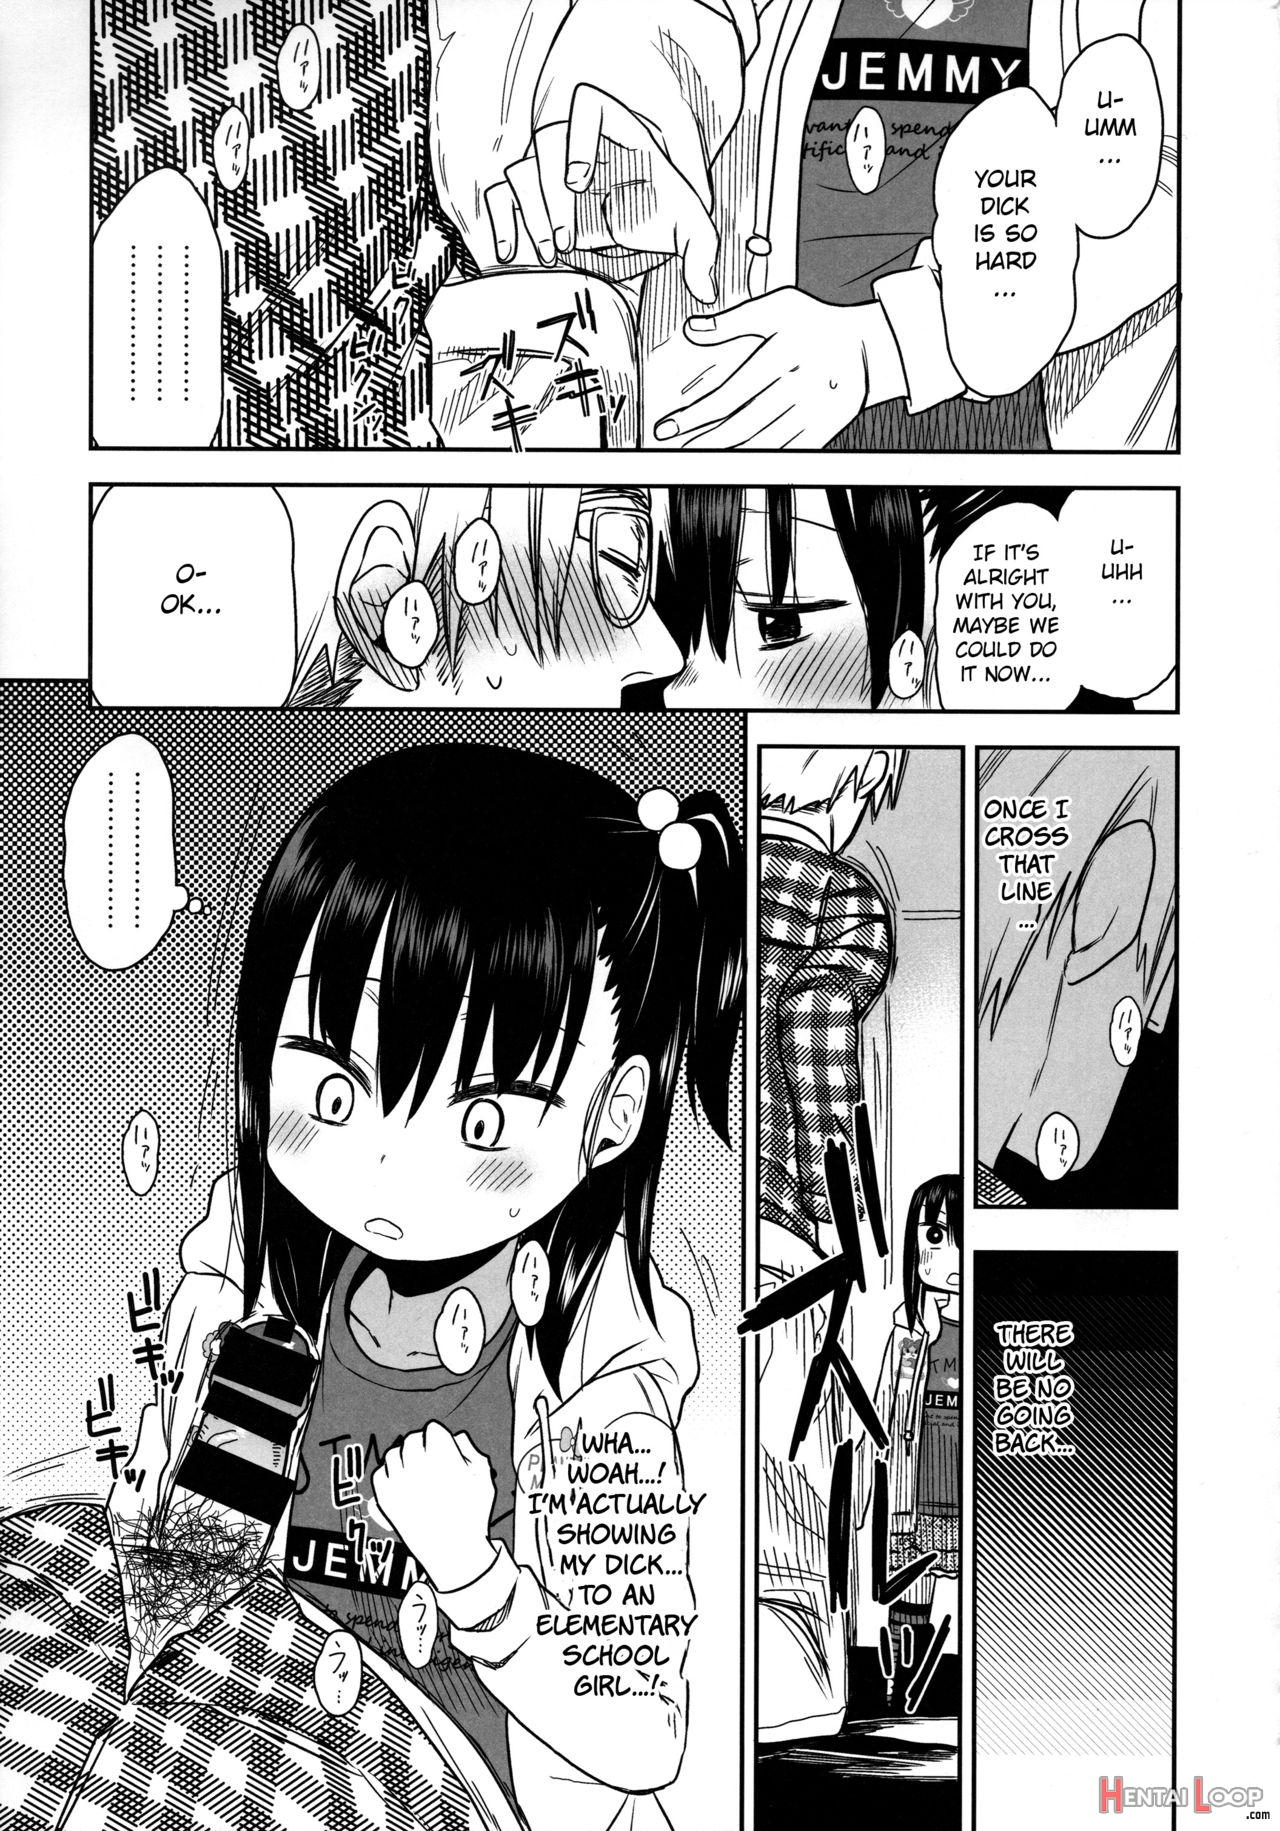 Tonari No Mako-chan Season 2 Vol. 2 page 21